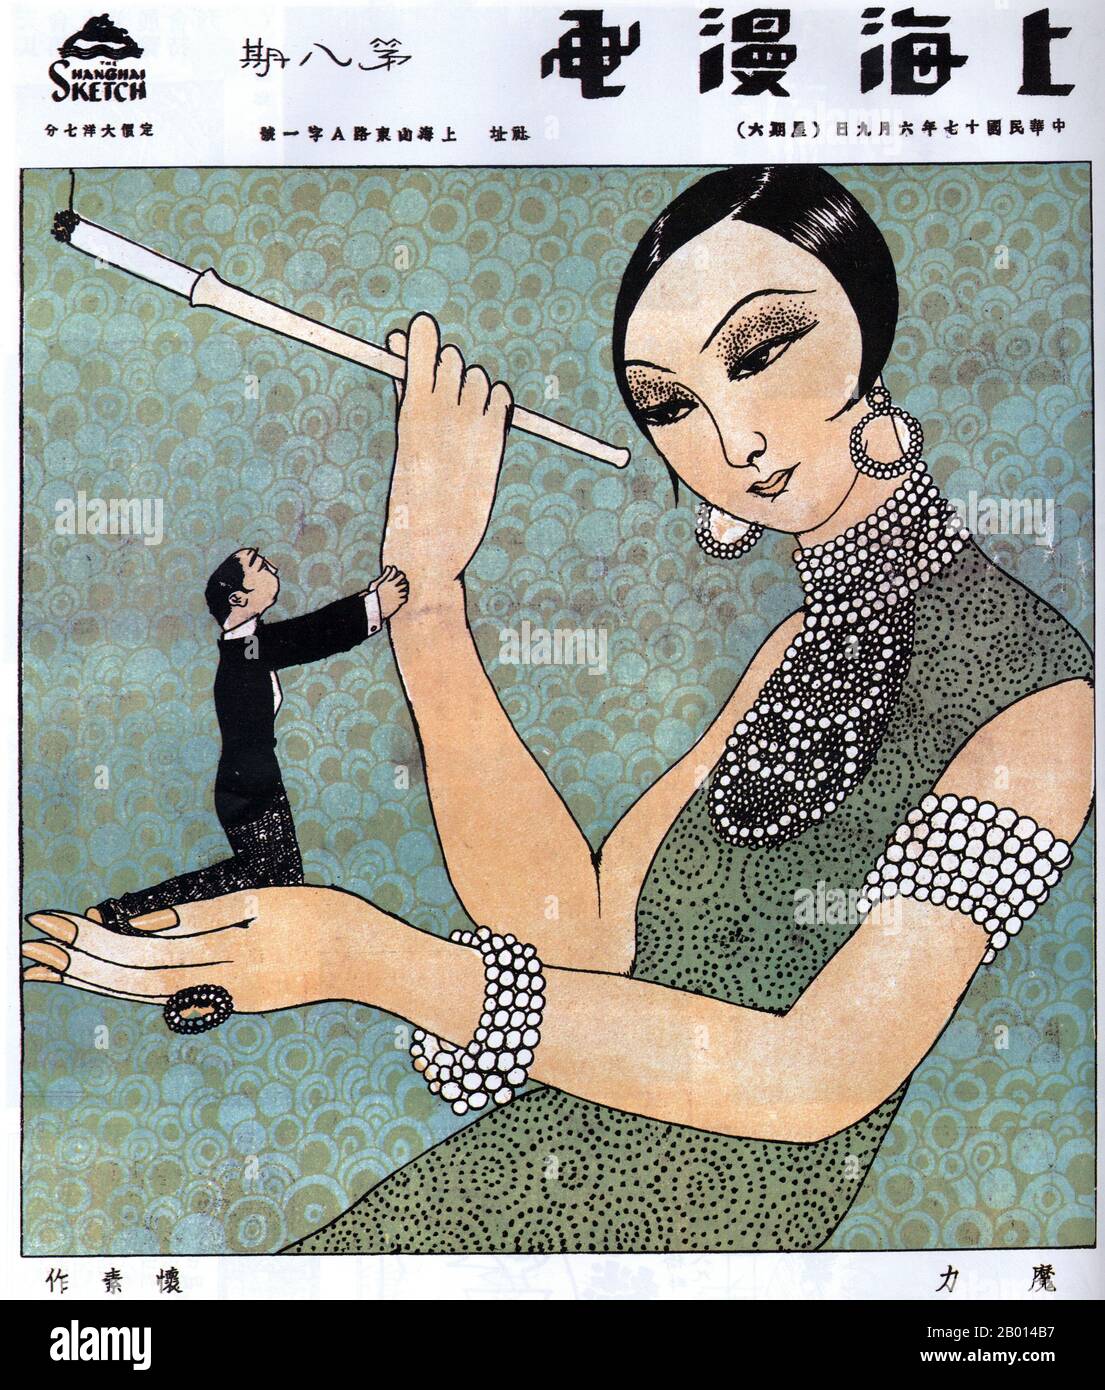 Chine: Une image de 'Shanghai Manhua' intitulée 'fascination' montre une socialite féminine habillée et habillée avec un porte-cigarette d'une main et un mâle sous-missif et suppliant de l'autre. Par Huaisu, le 9 juin 1928. L'image 'Shanghai Manhua' (Shanghai Sketch), publiée entre le 21 avril 1928 et le 7 juin 1930, était un mélange de dessins, de photographies et d'images allant de la publicité à la critique sociale et de caricatures politiques. Shanghai Manhua était un débouché pour les dessinateurs professionnels et les maîtres de croquis, généralement d'une nature avant-gardiste ou progressive. Banque D'Images